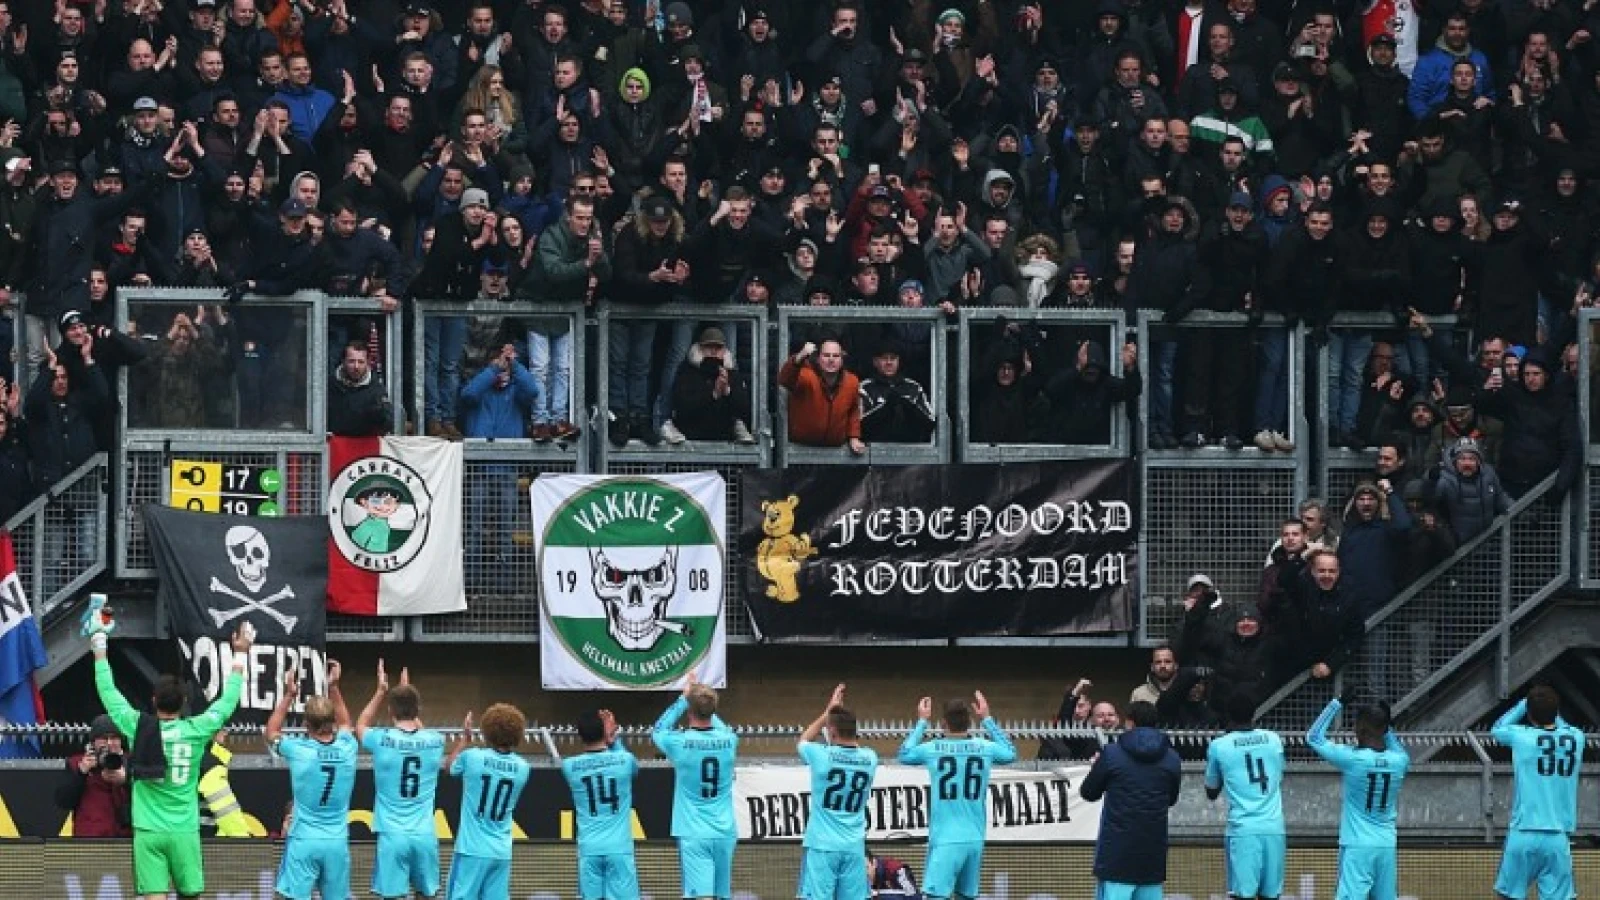 Ook in Enschede wordt Feyenoord gesteund door een vol uitvak